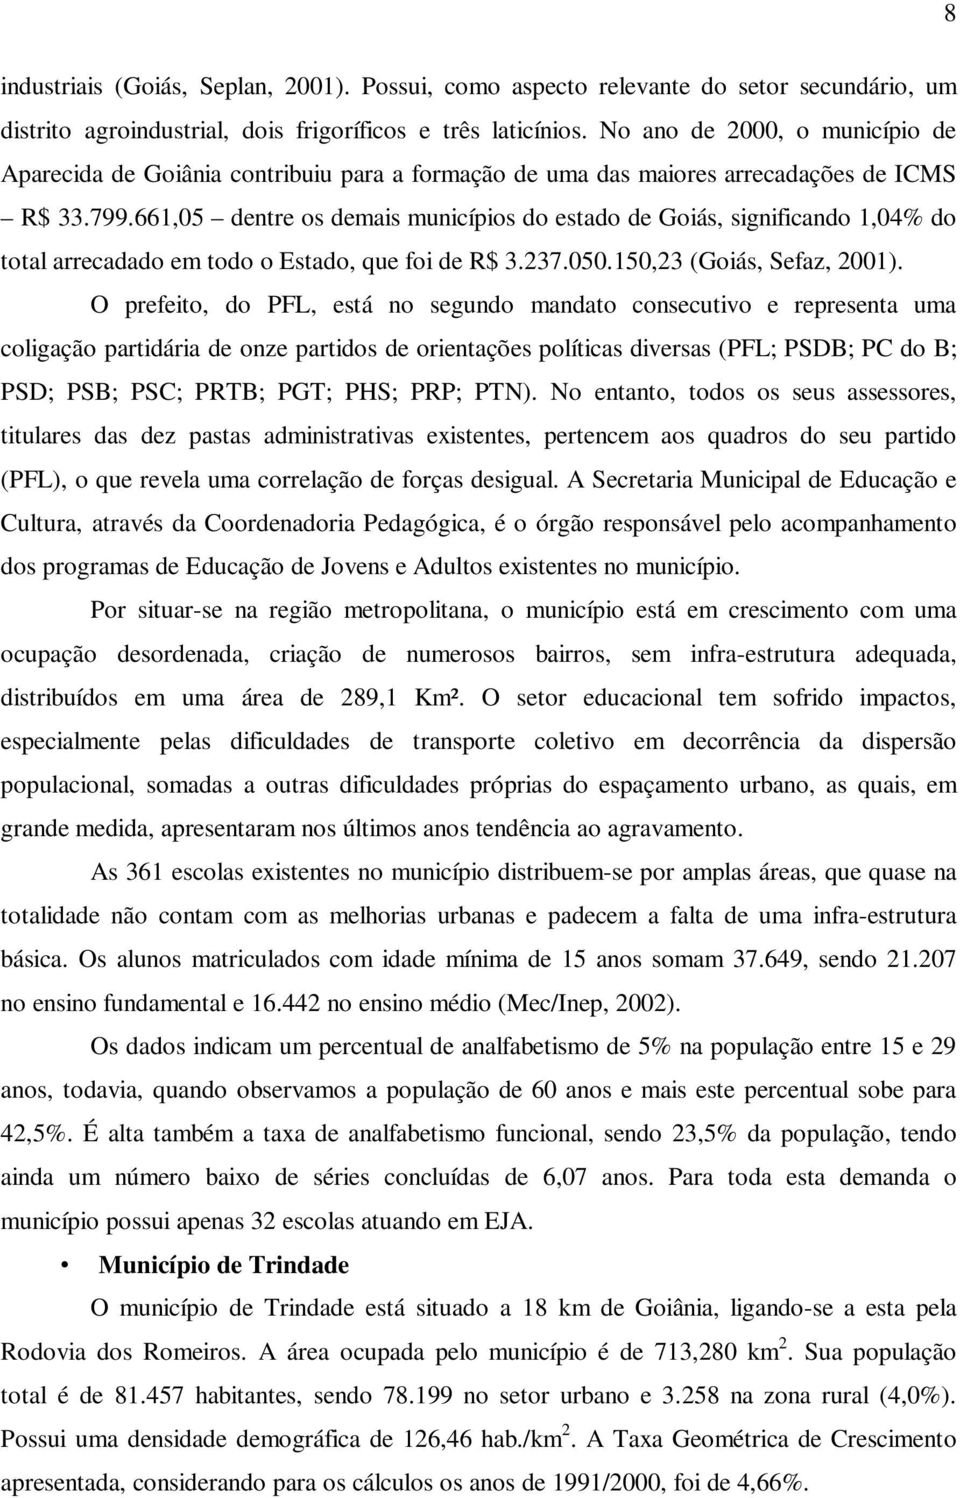 661,05 dentre os demais municípios do estado de Goiás, significando 1,04% do total arrecadado em todo o Estado, que foi de R$ 3.237.050.150,23 (Goiás, Sefaz, 2001).